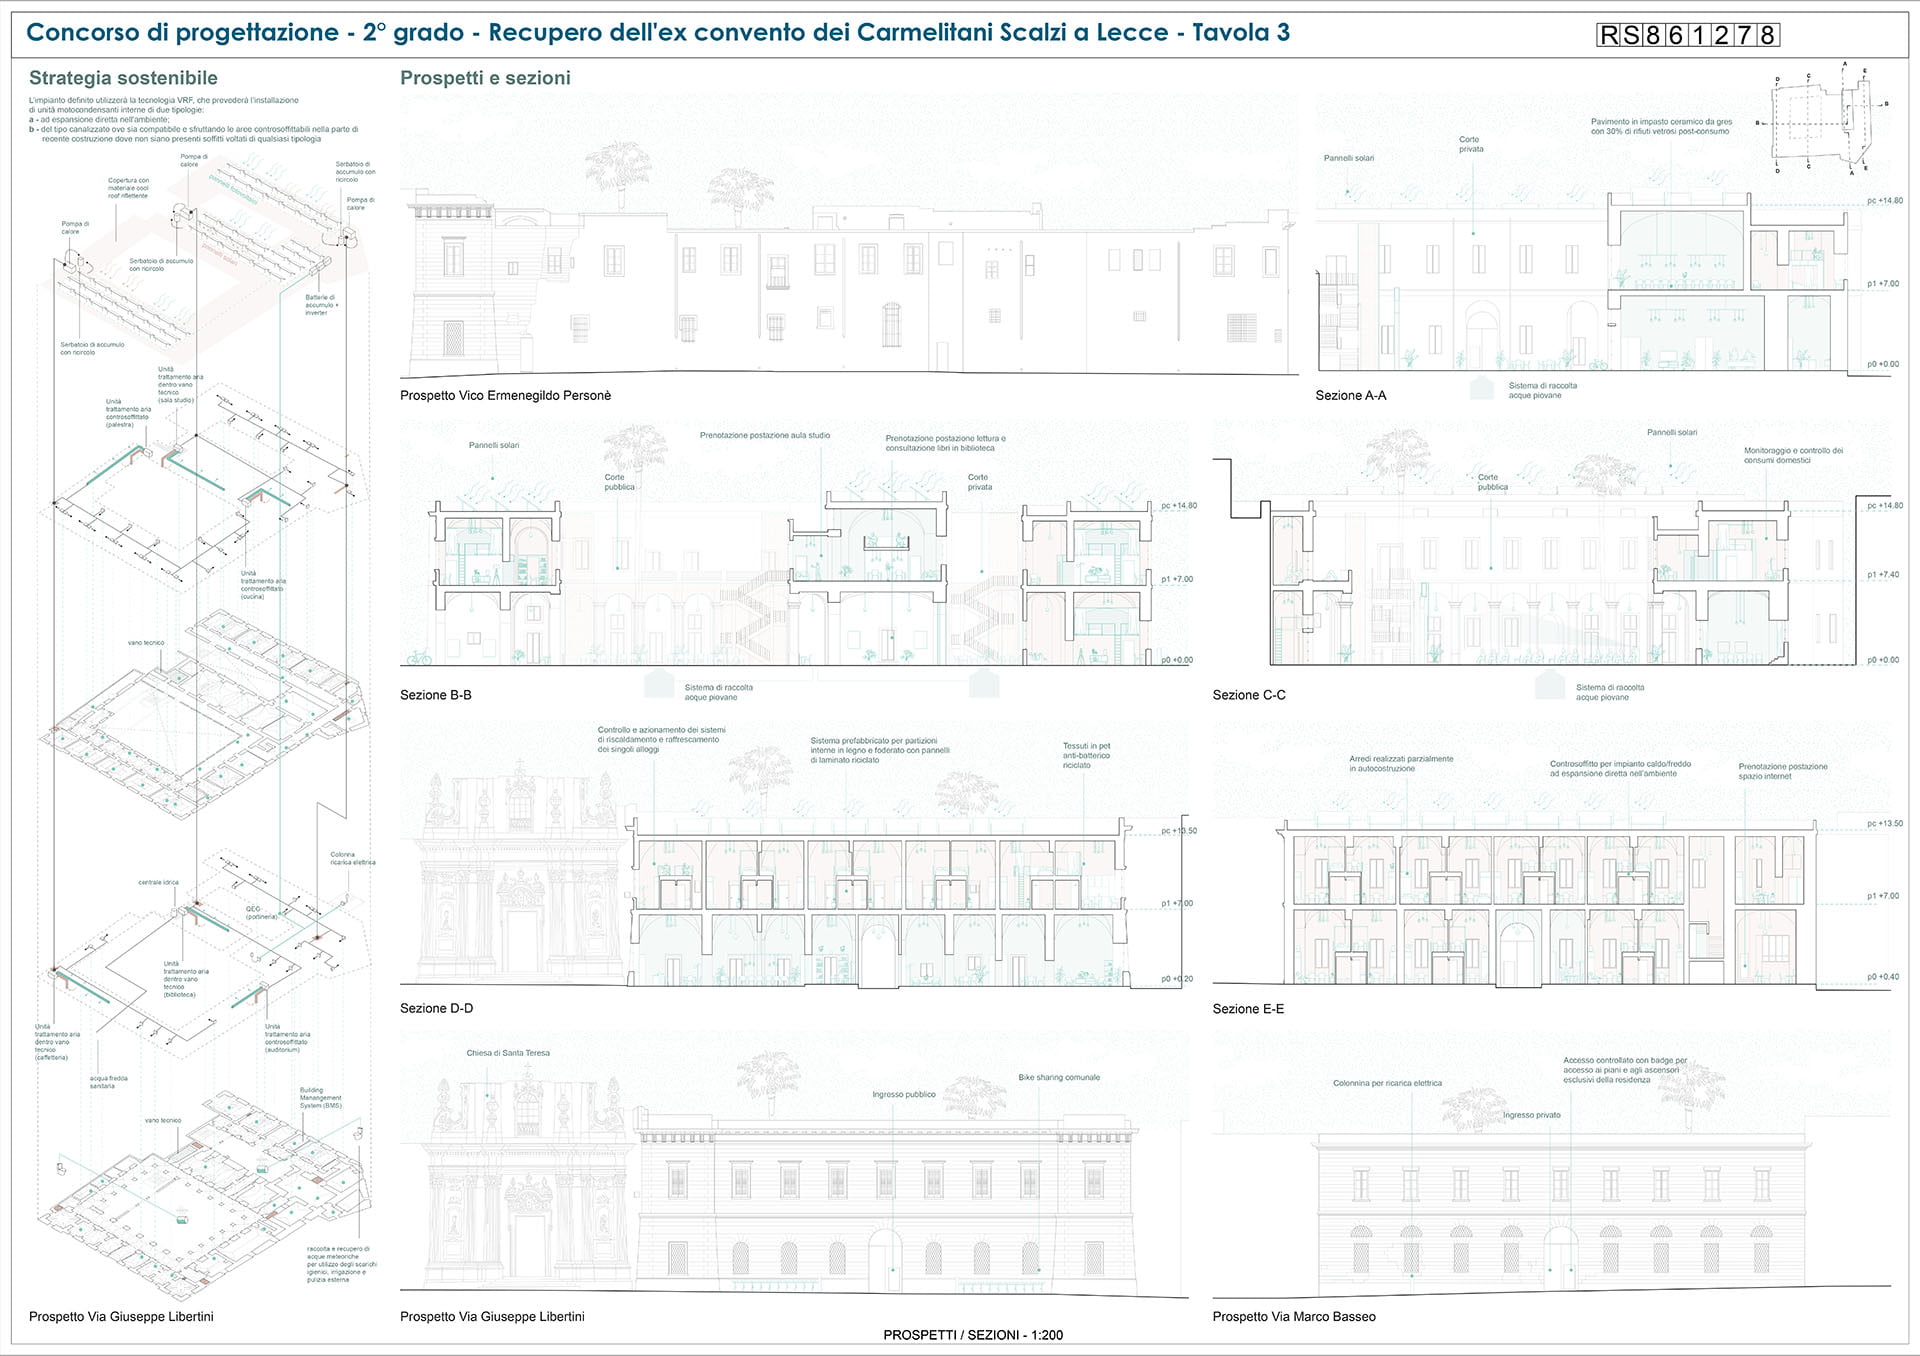 Ex convento Carmelitani Scalzi, Lecce: disegni della struttura per il concorso di progettazione (tavola 3)